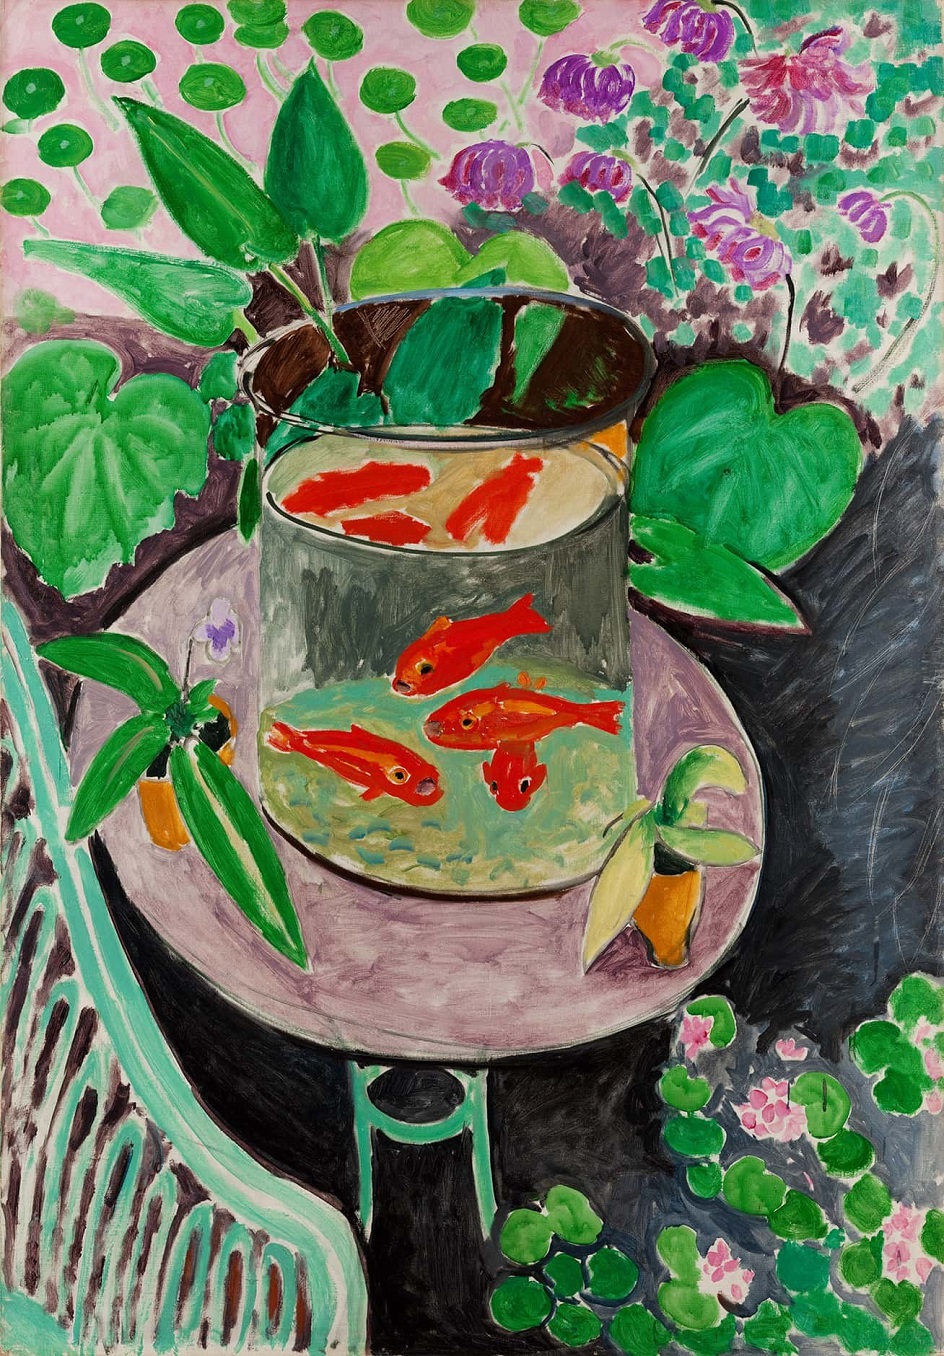 Анри Матисс. Картина «Красные рыбы», 1912